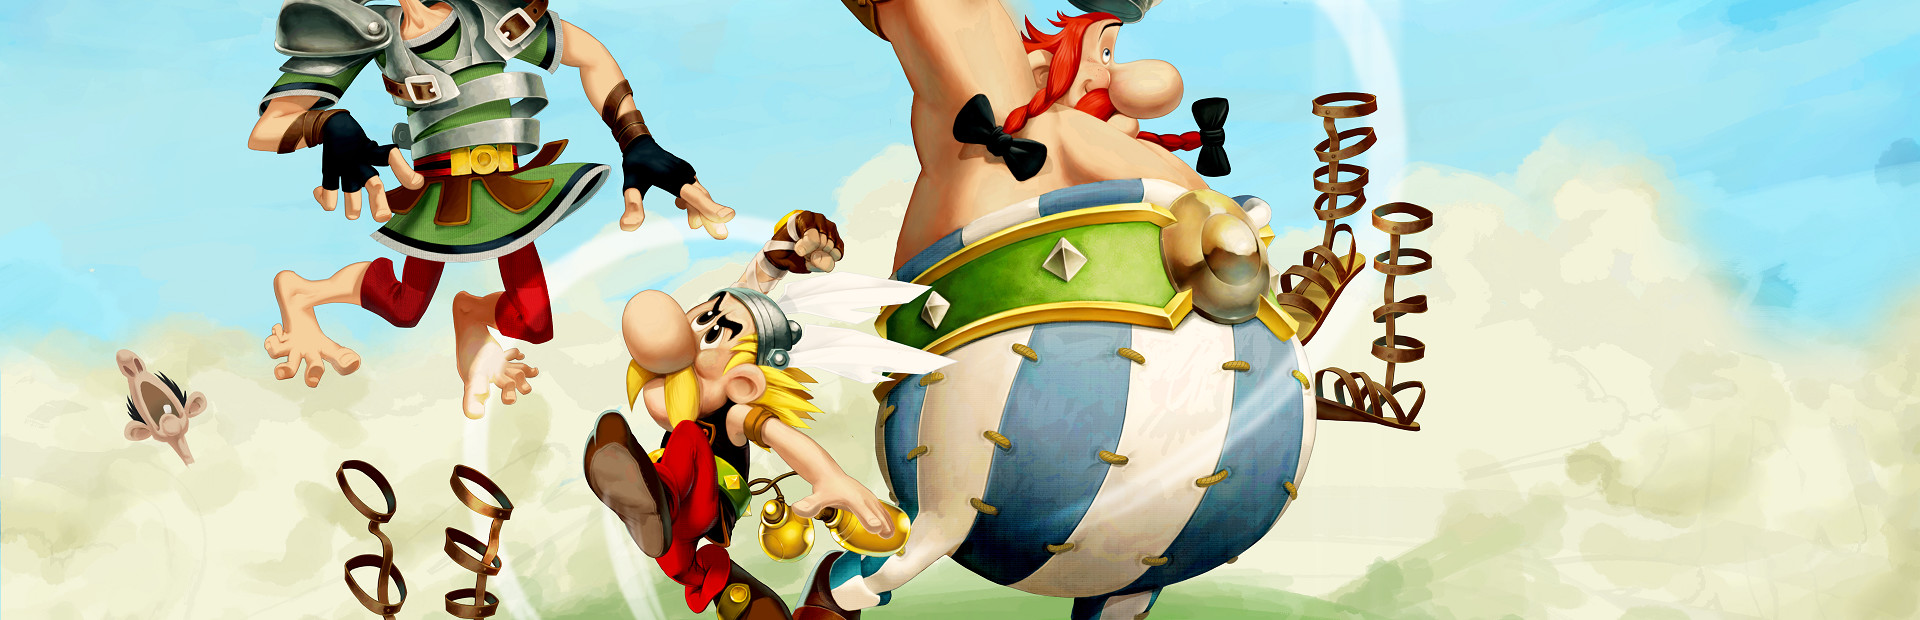 Asterix & Obelix XXL 2 cover image